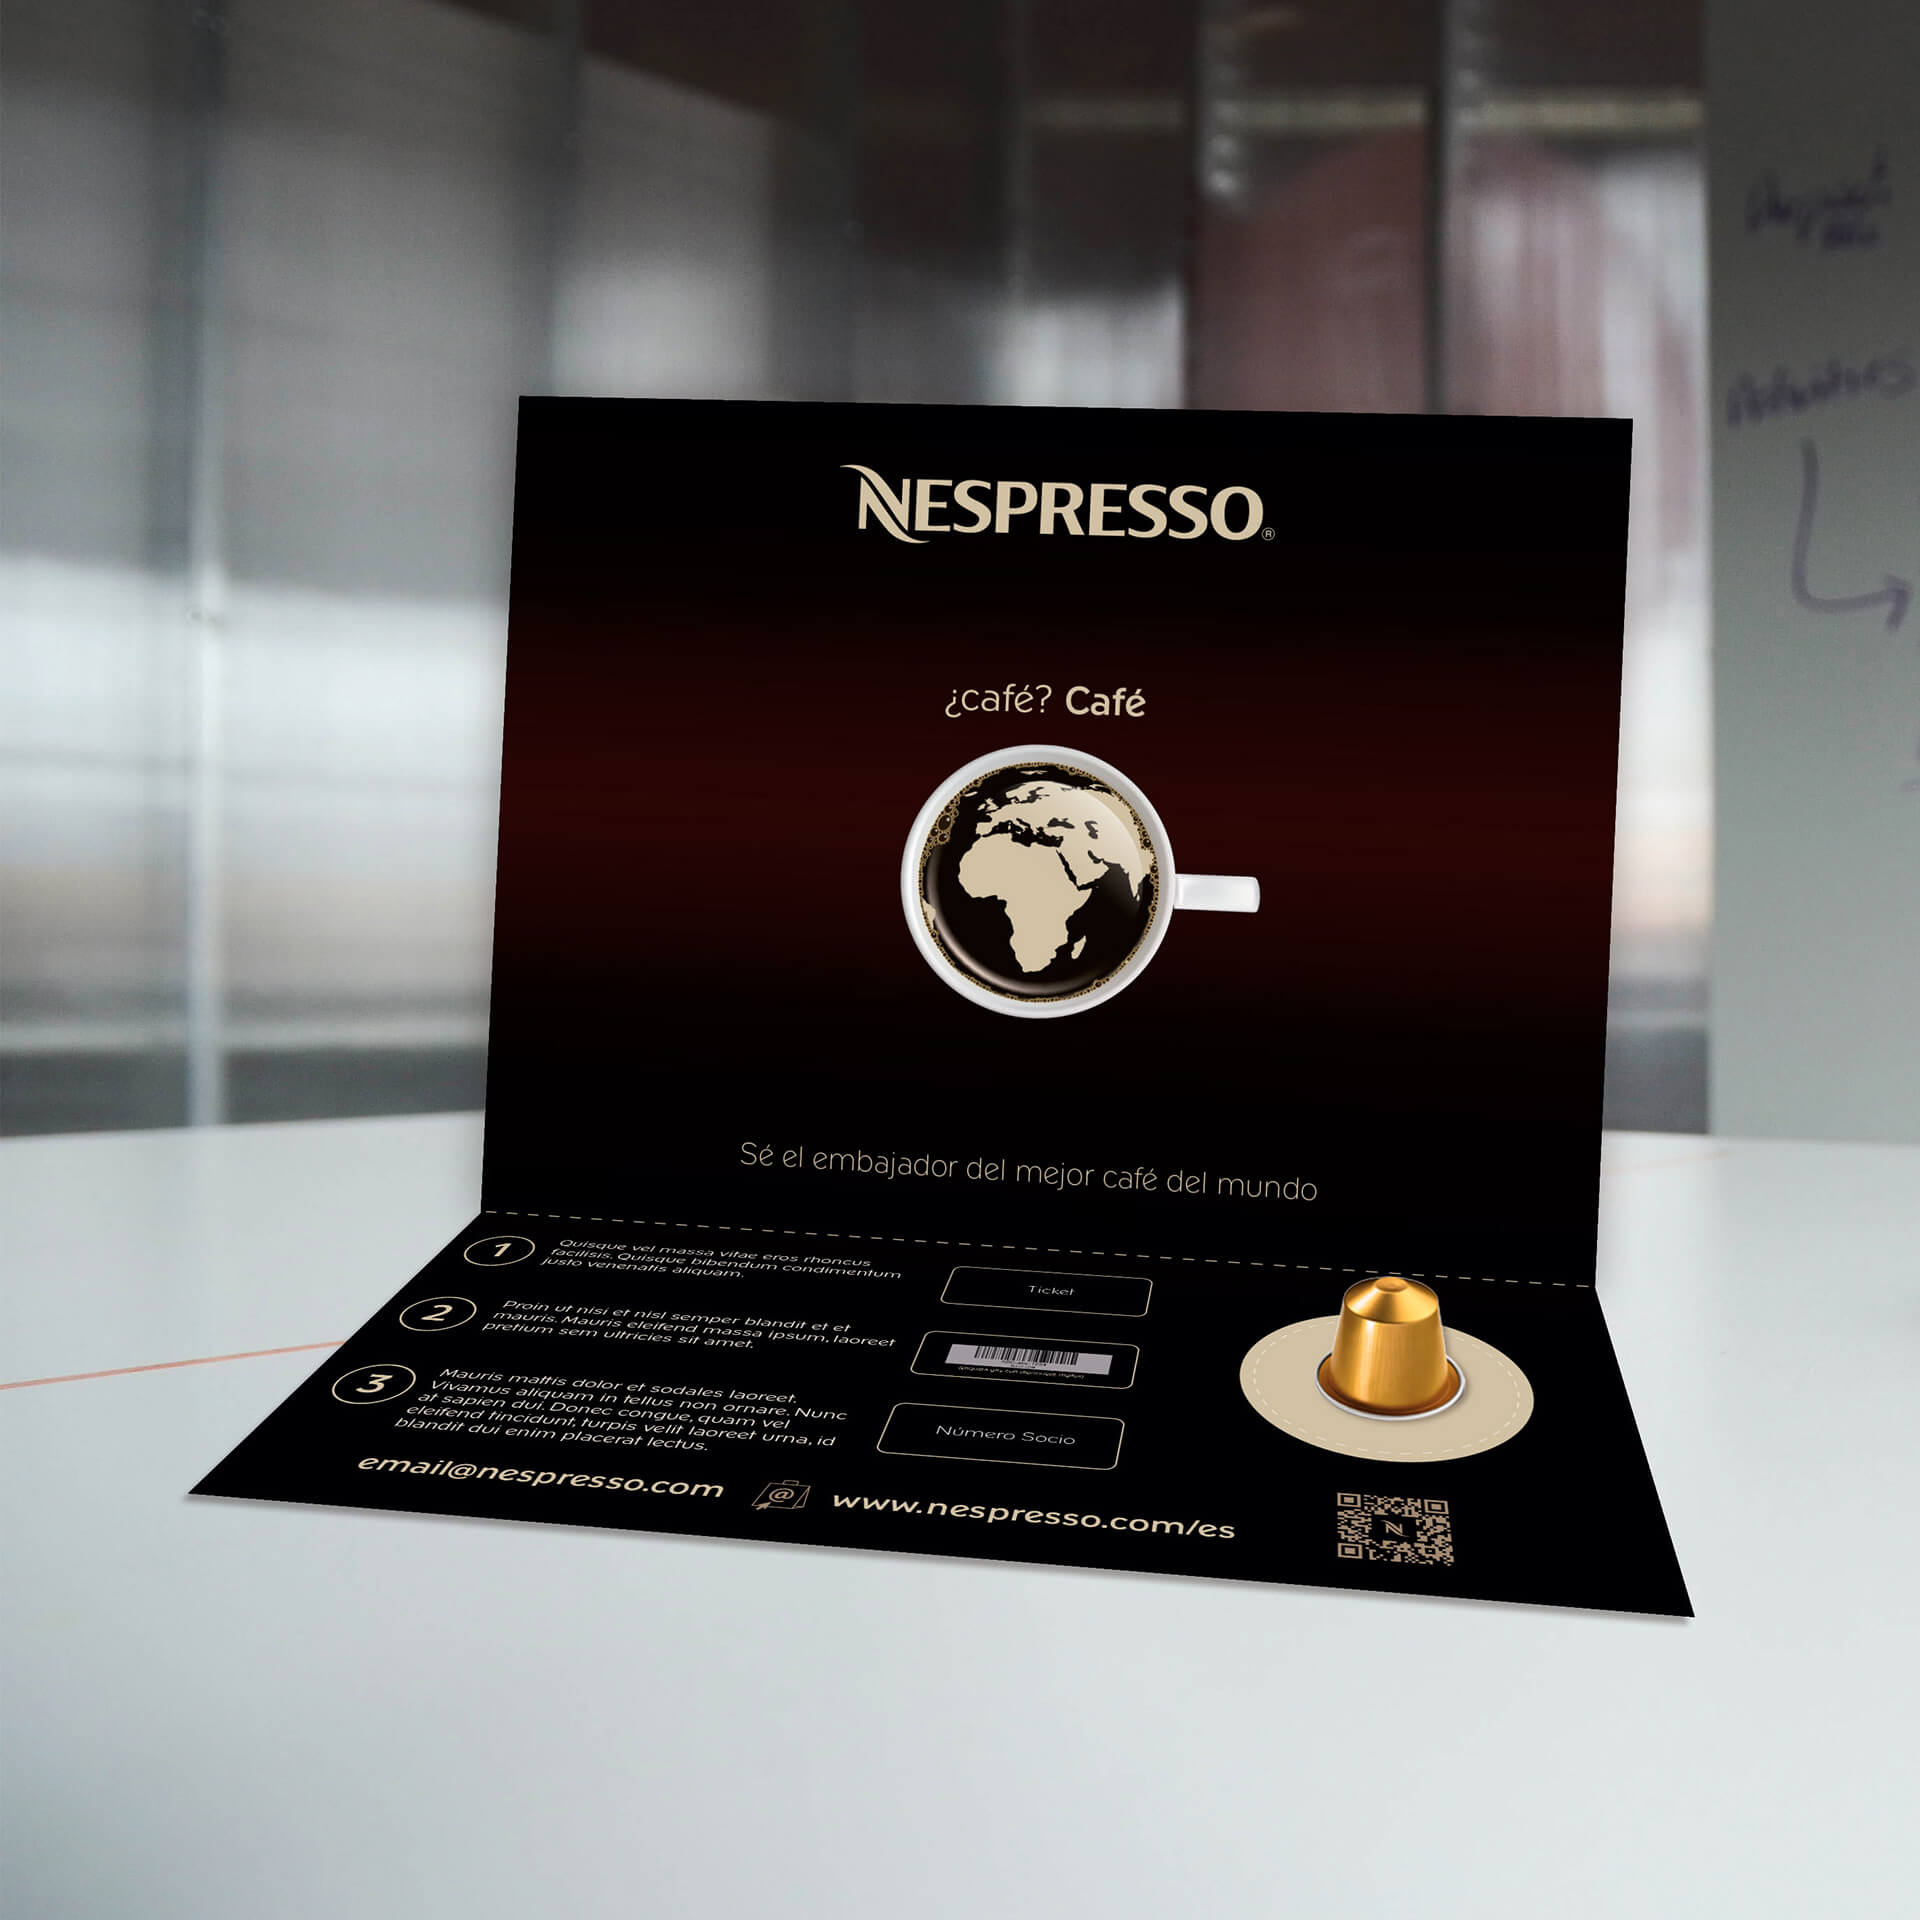 Nespresso - Table stand mockup